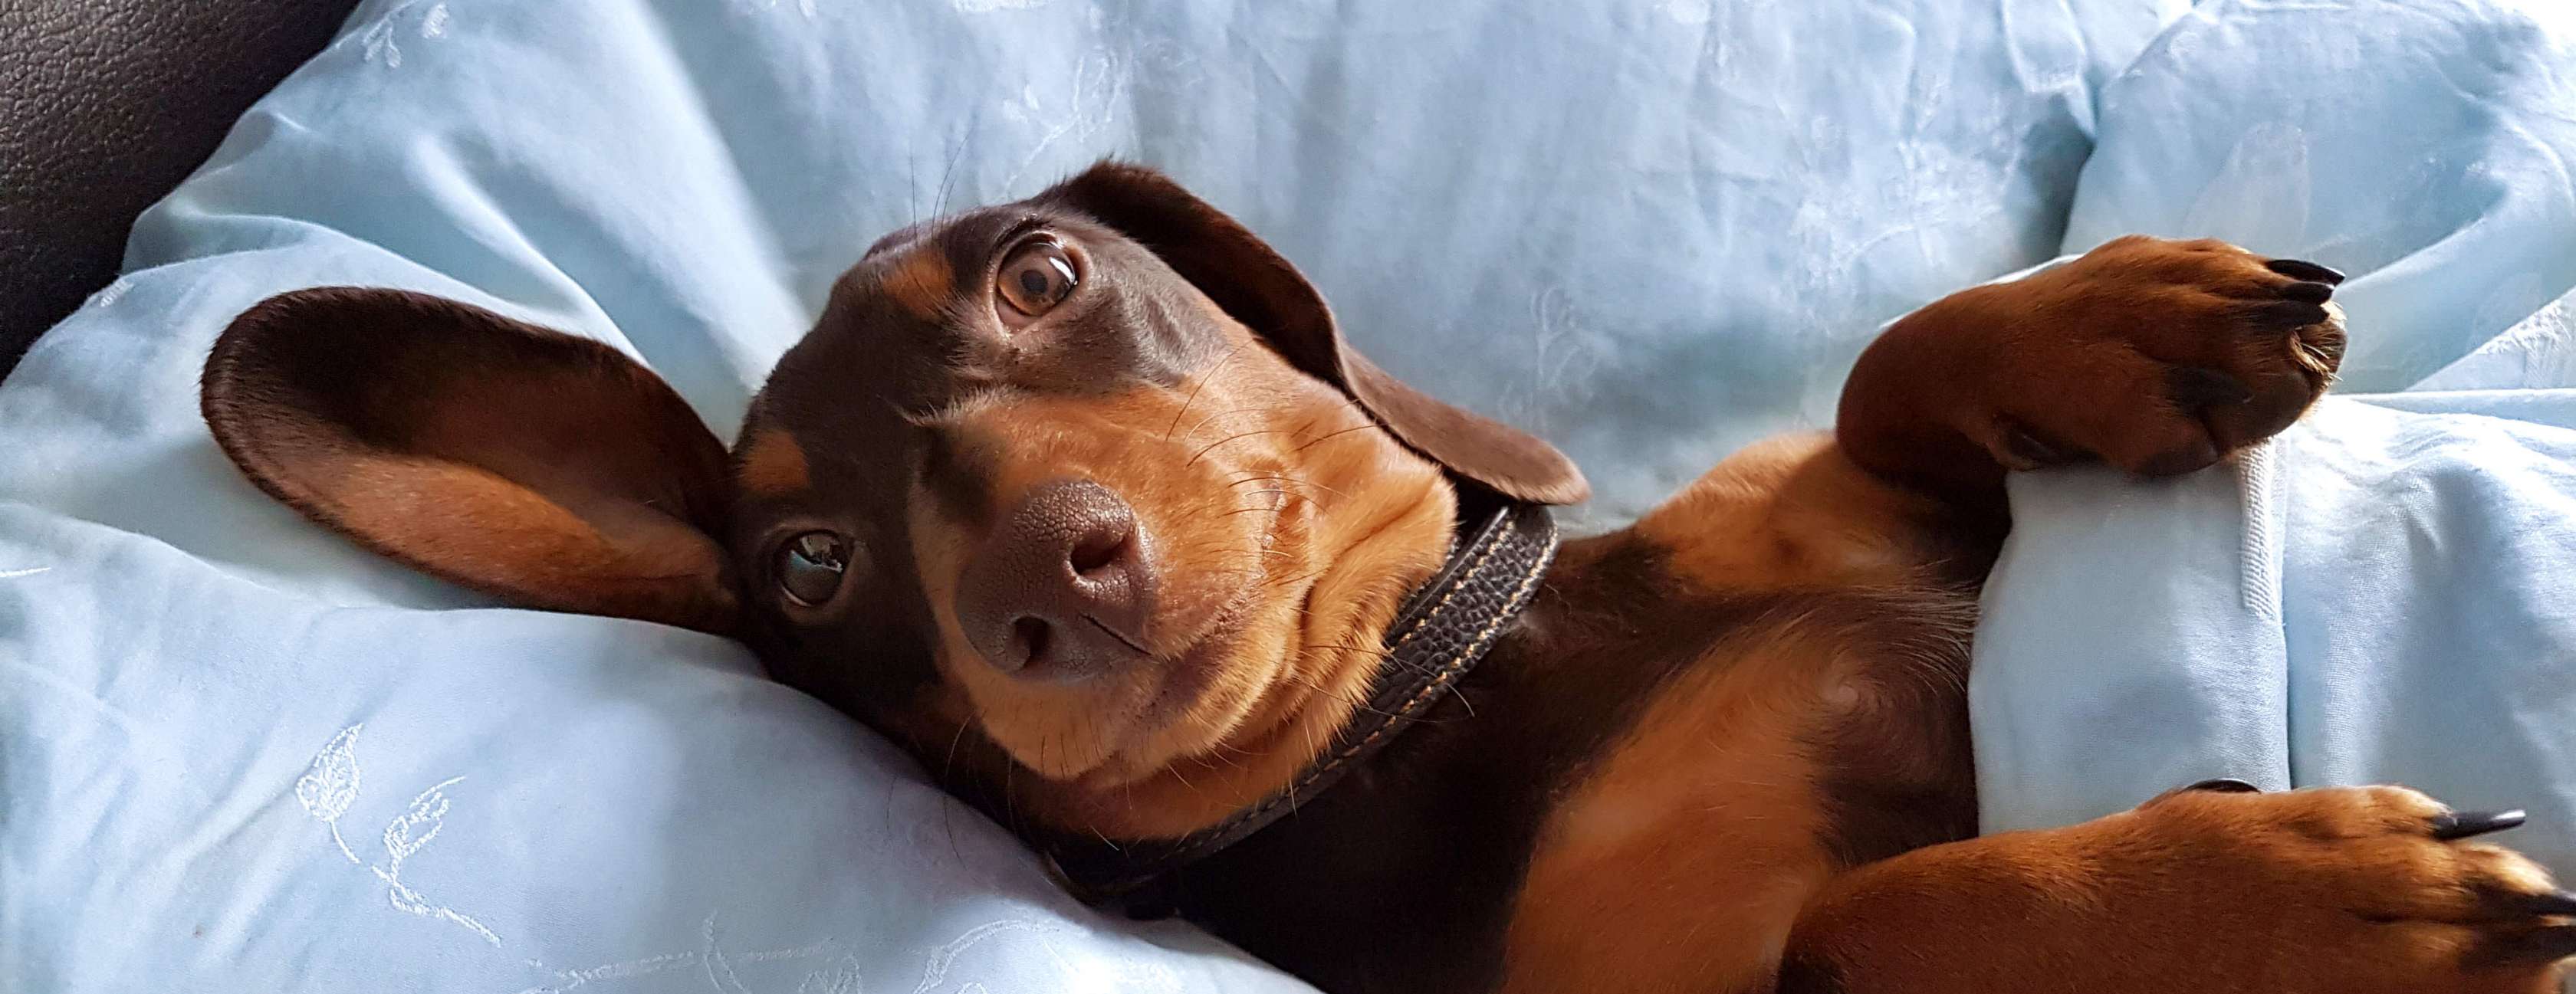  Allianz - Homöopathie für Hunde: Dackel liegt im Bett und spitzt die Ohren